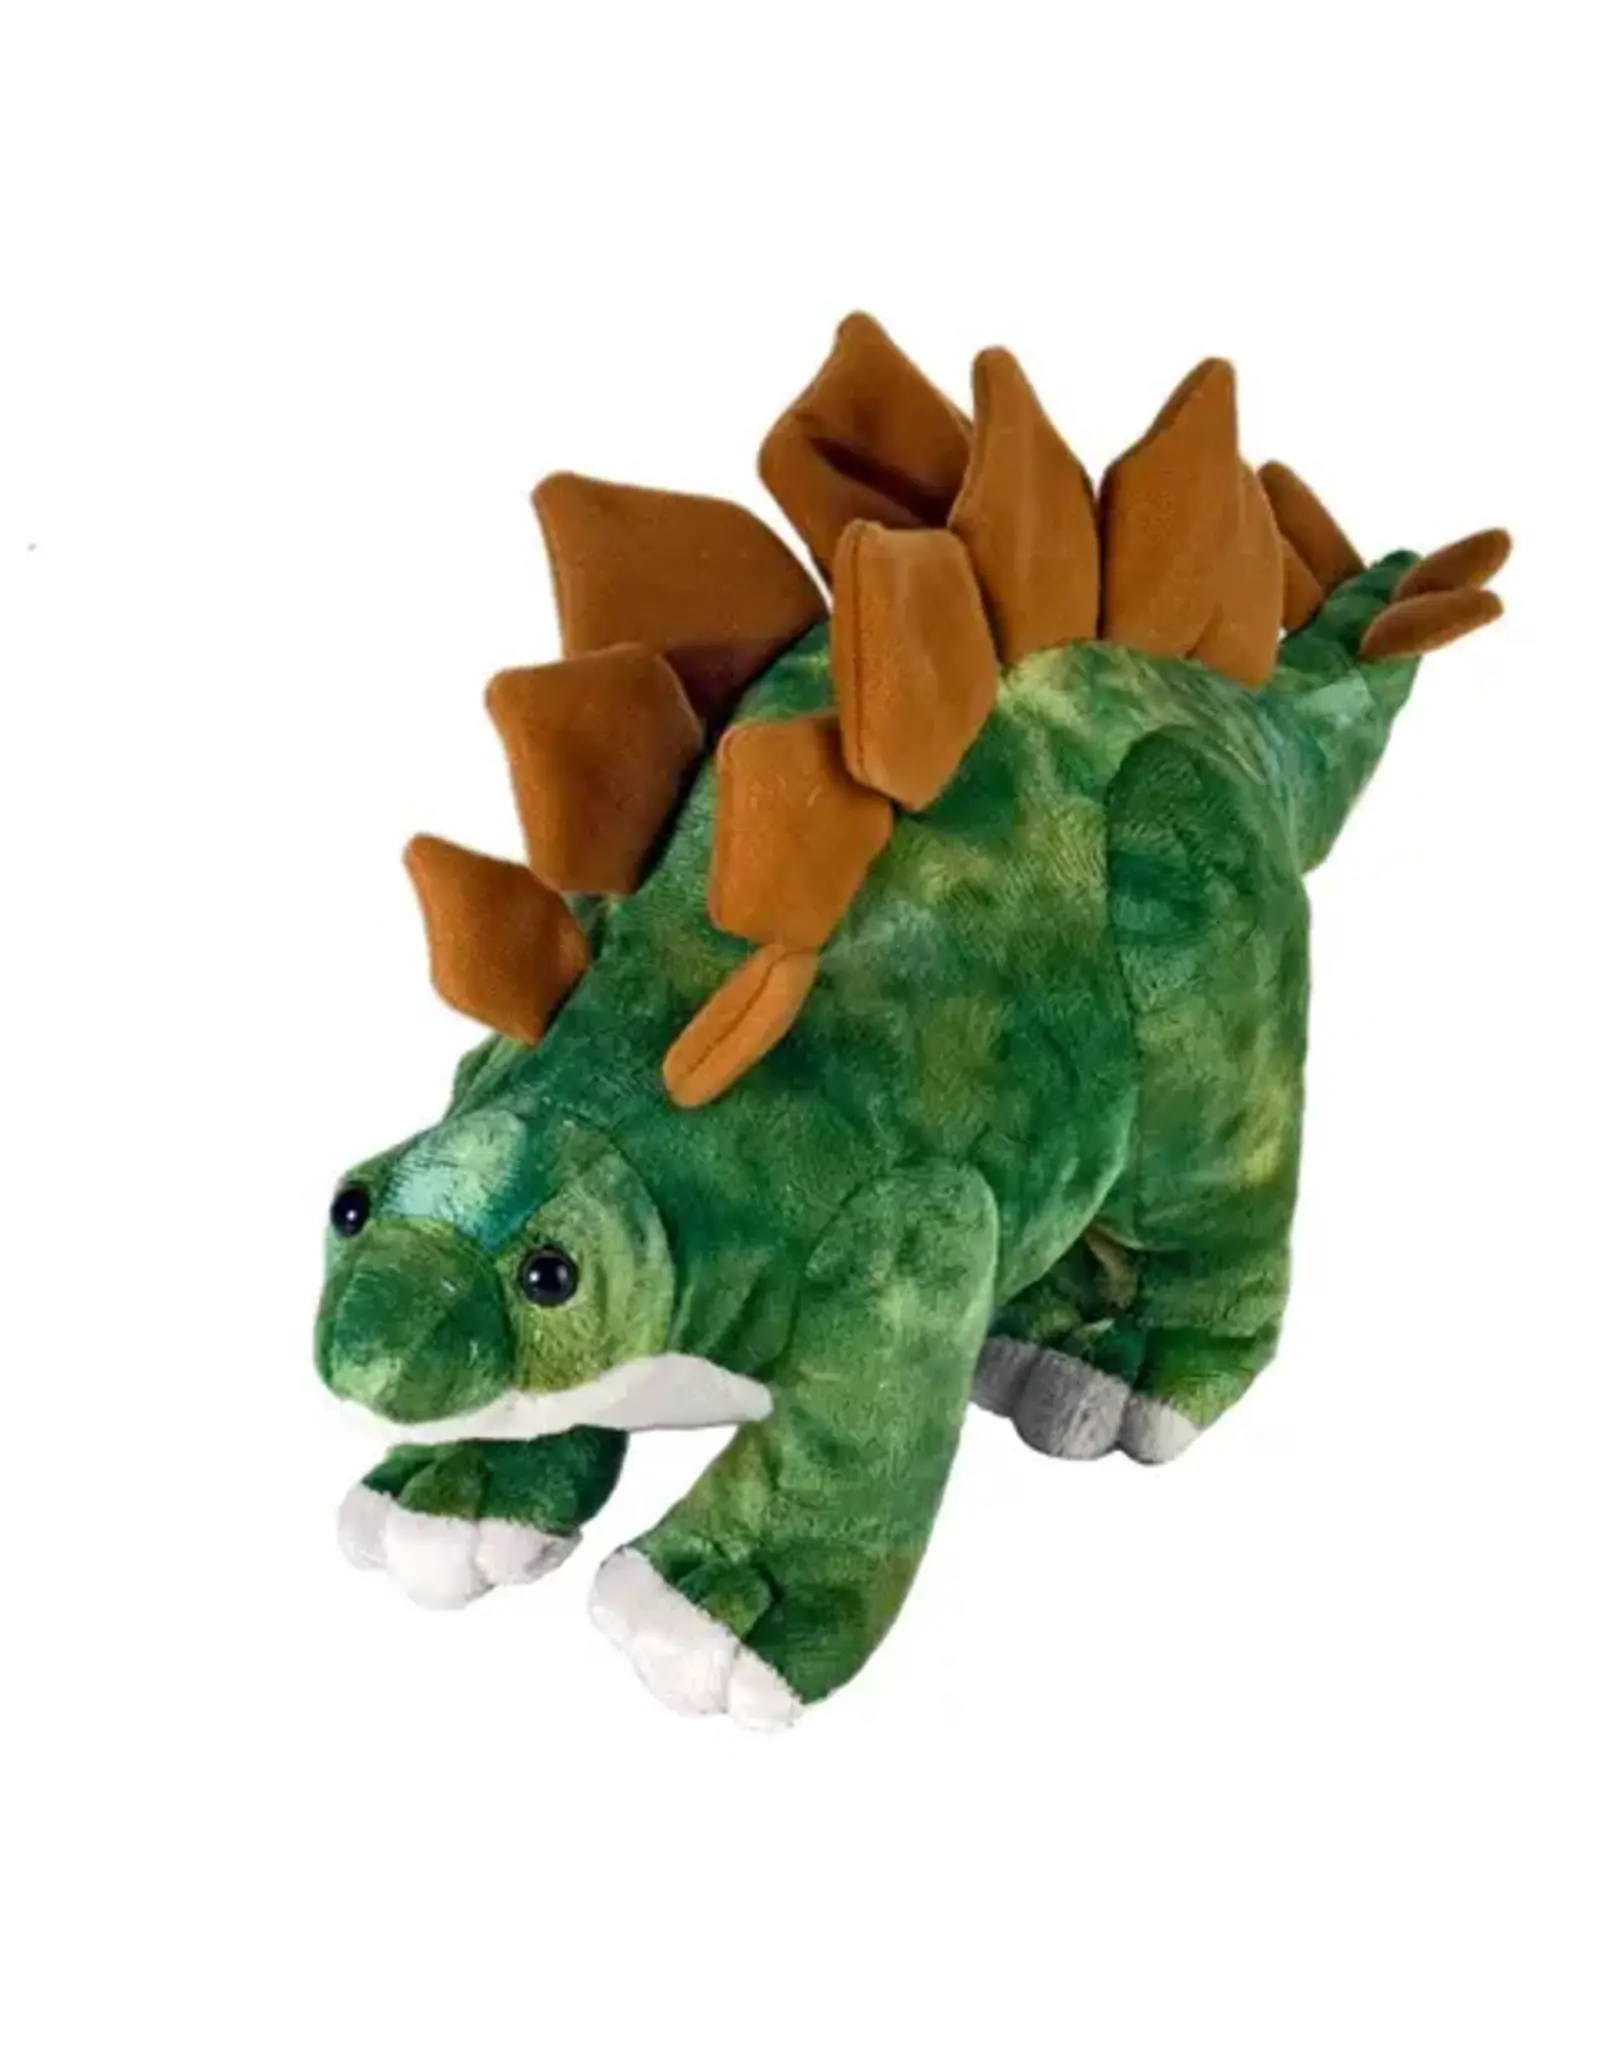 Stegosaurus Stuffed Animal - 10"